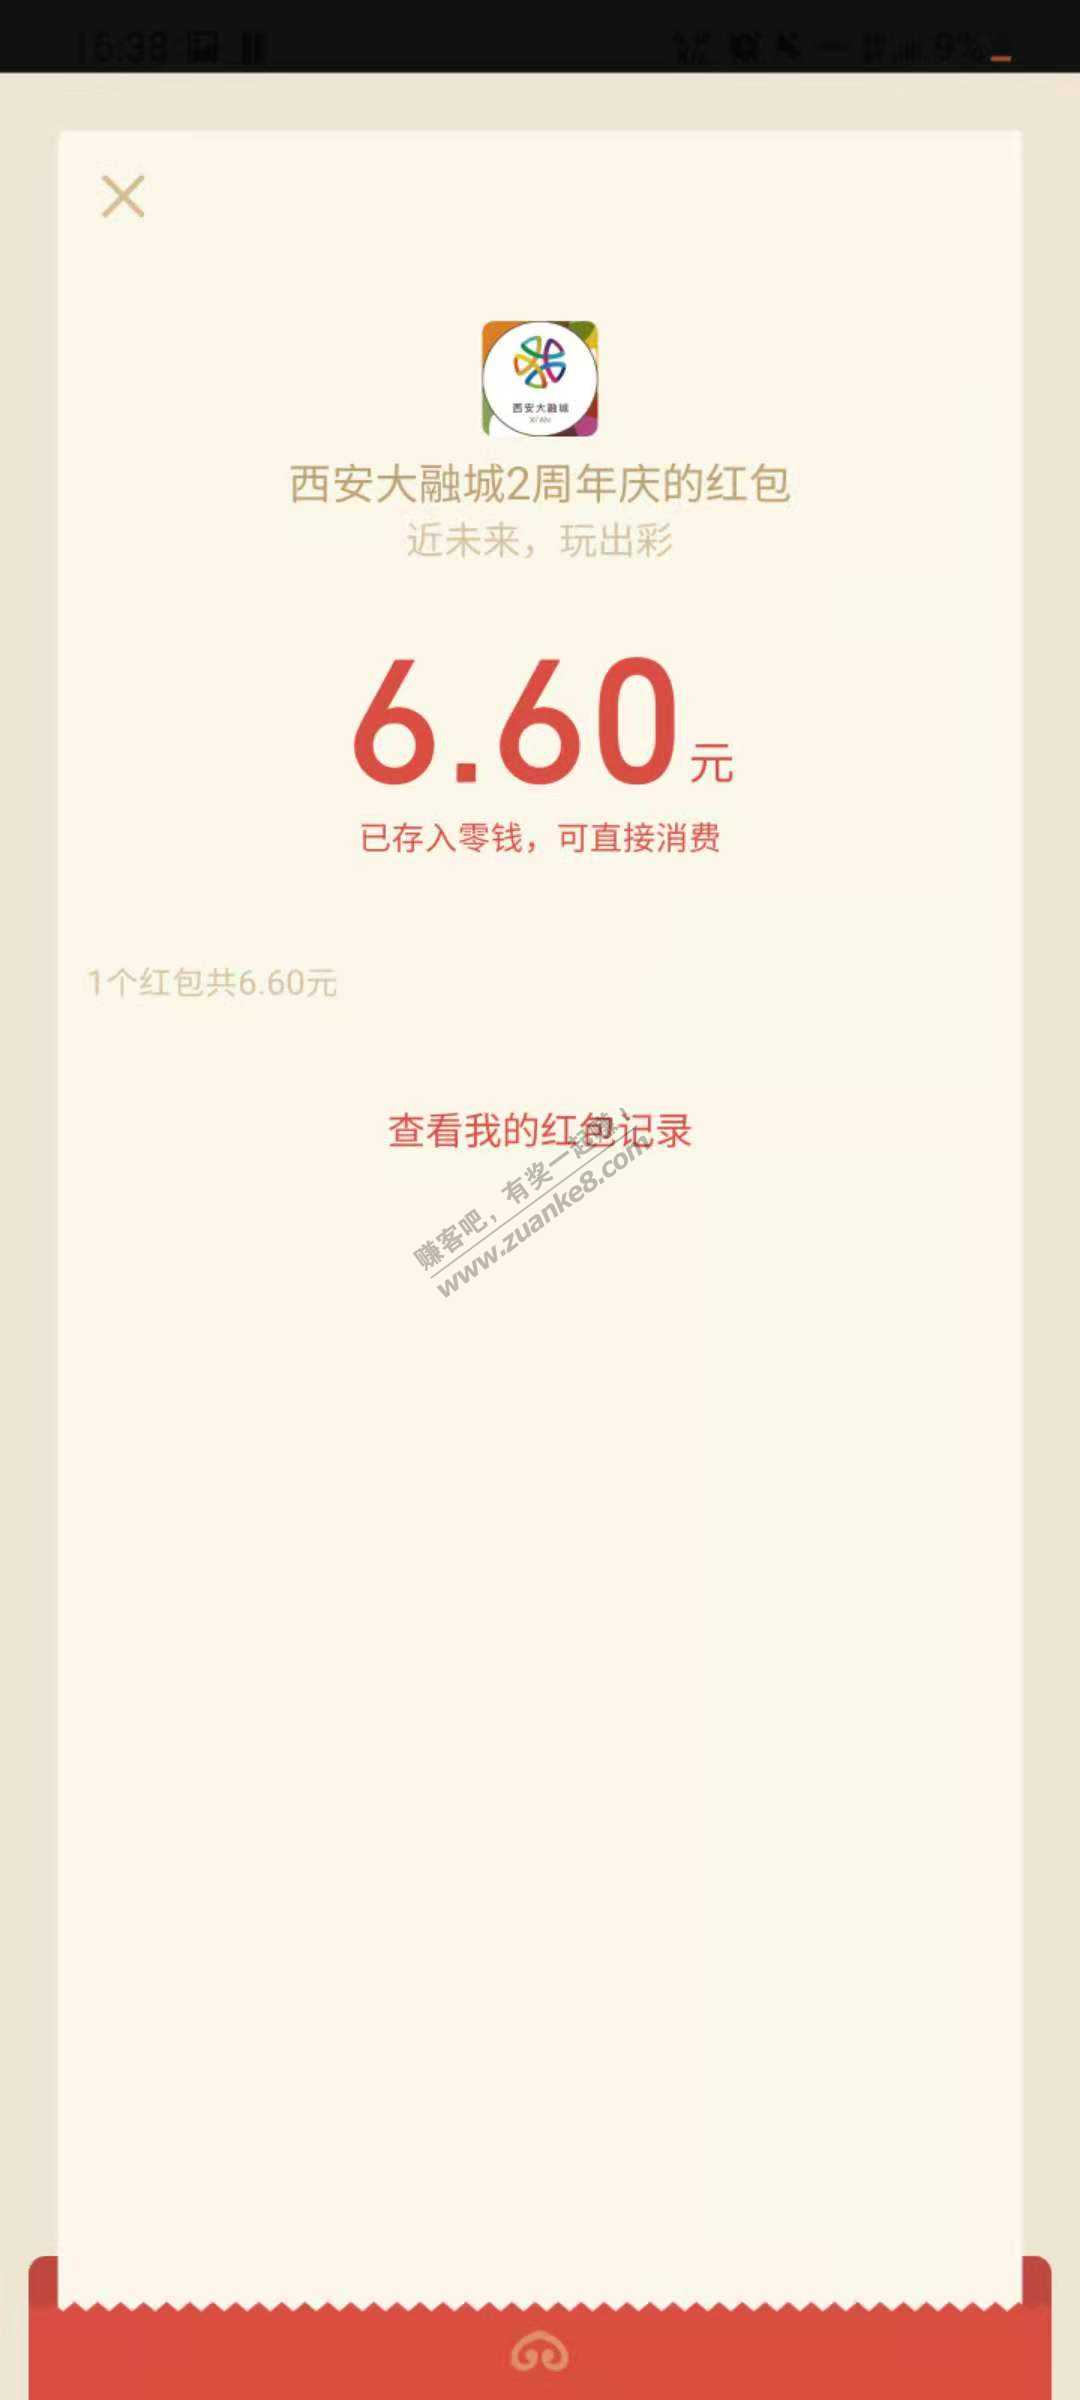 微信6.6毛-惠小助(52huixz.com)